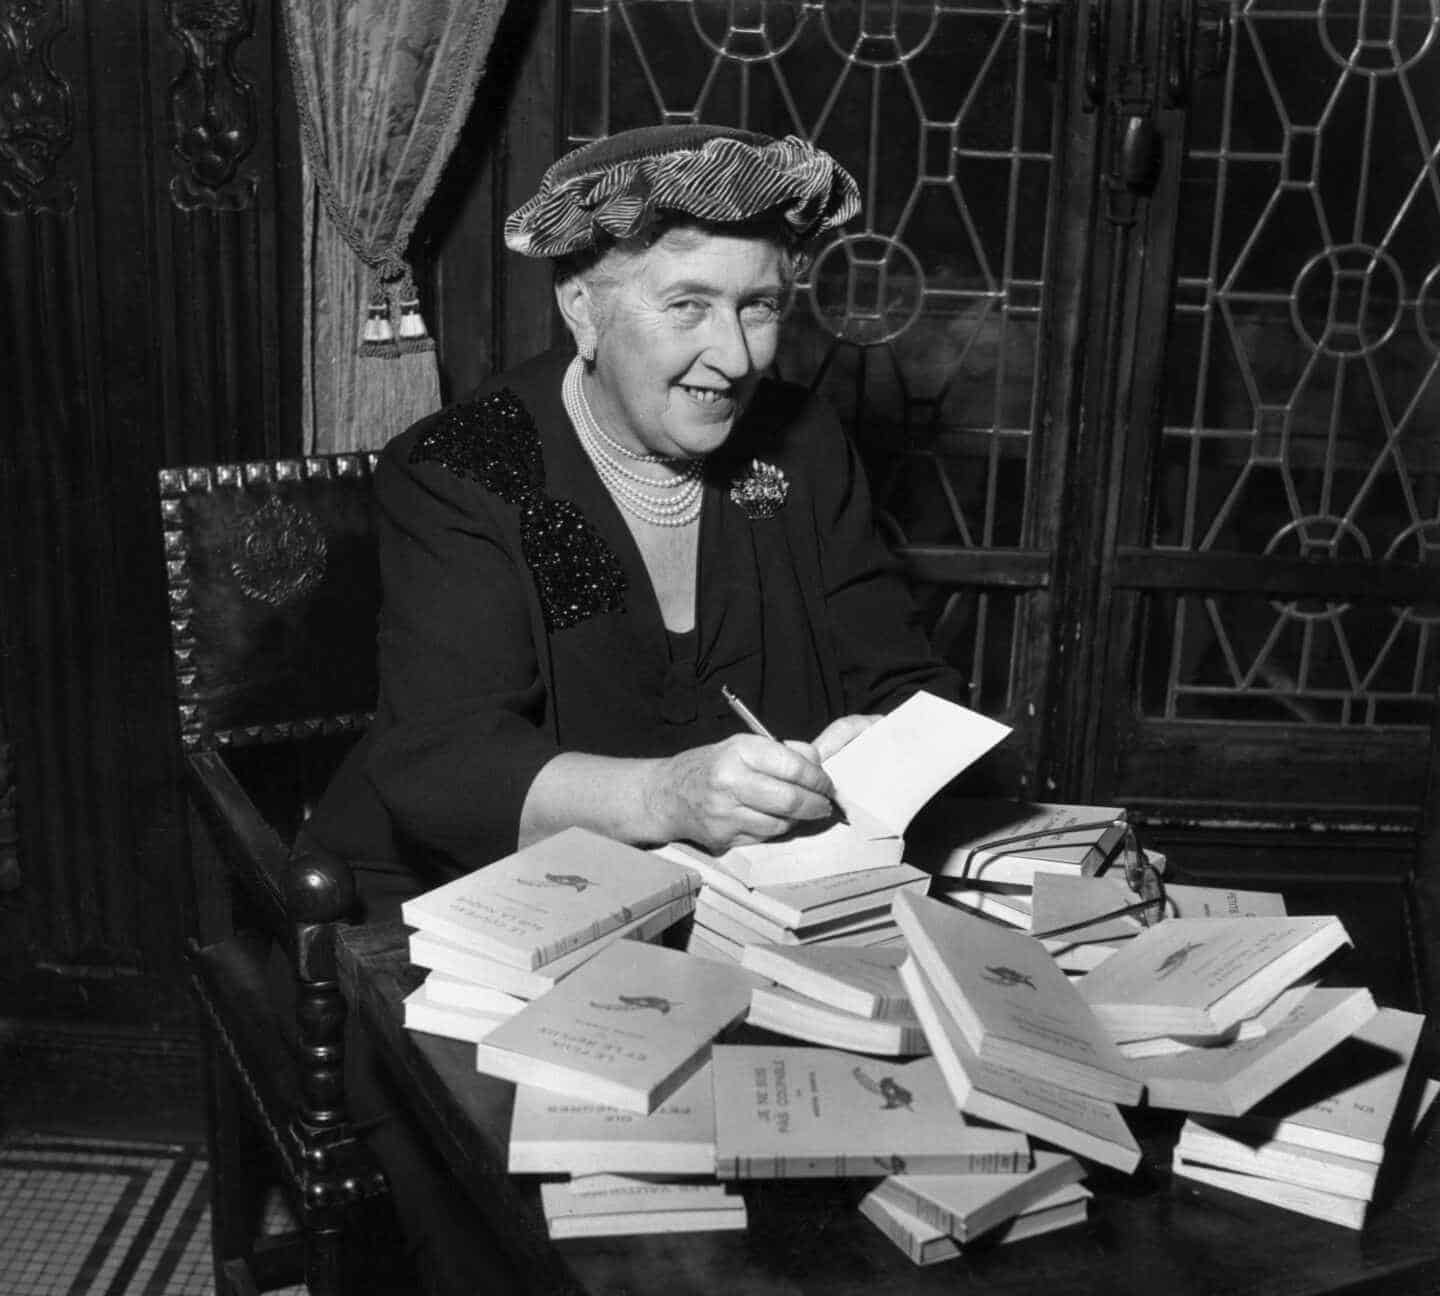 El libro 'Diez negritos' de Agatha Christie cambia de título en francés para "no herir"